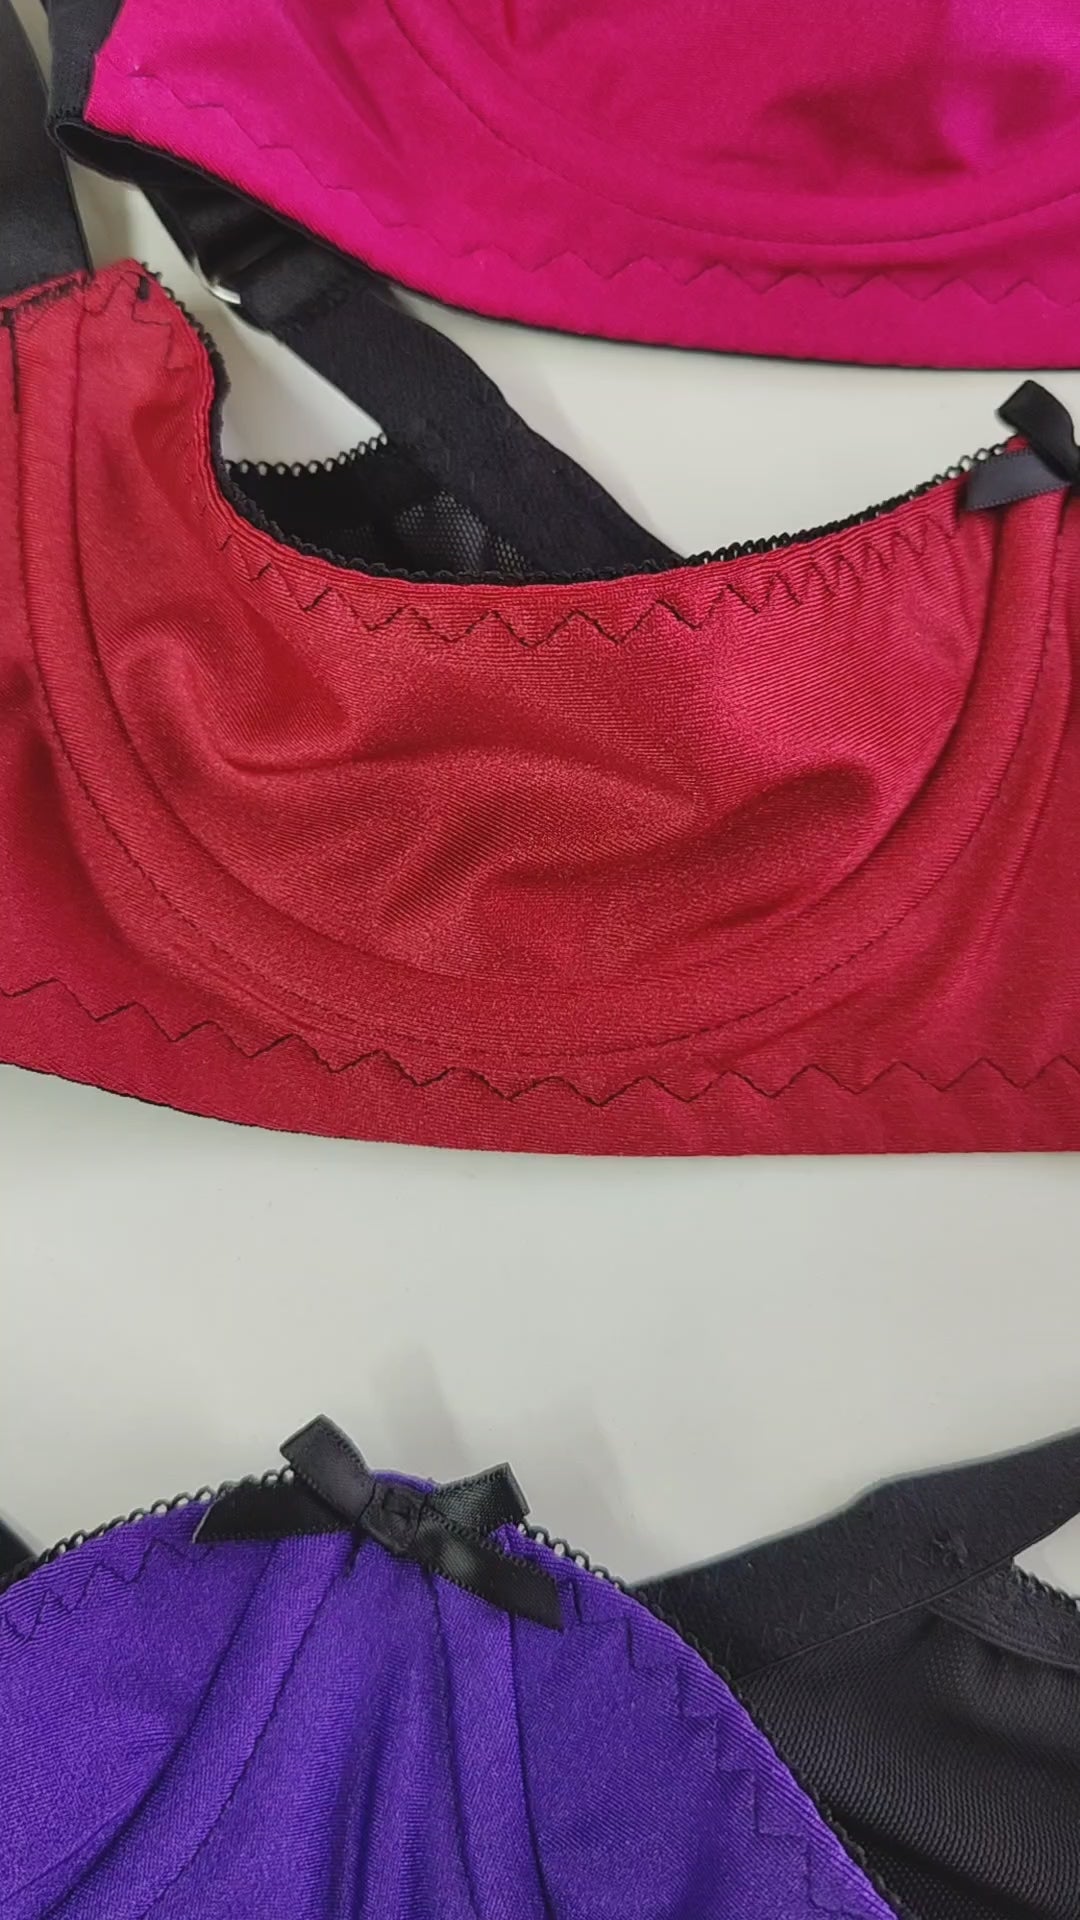 Red GINA Quarter cup bra